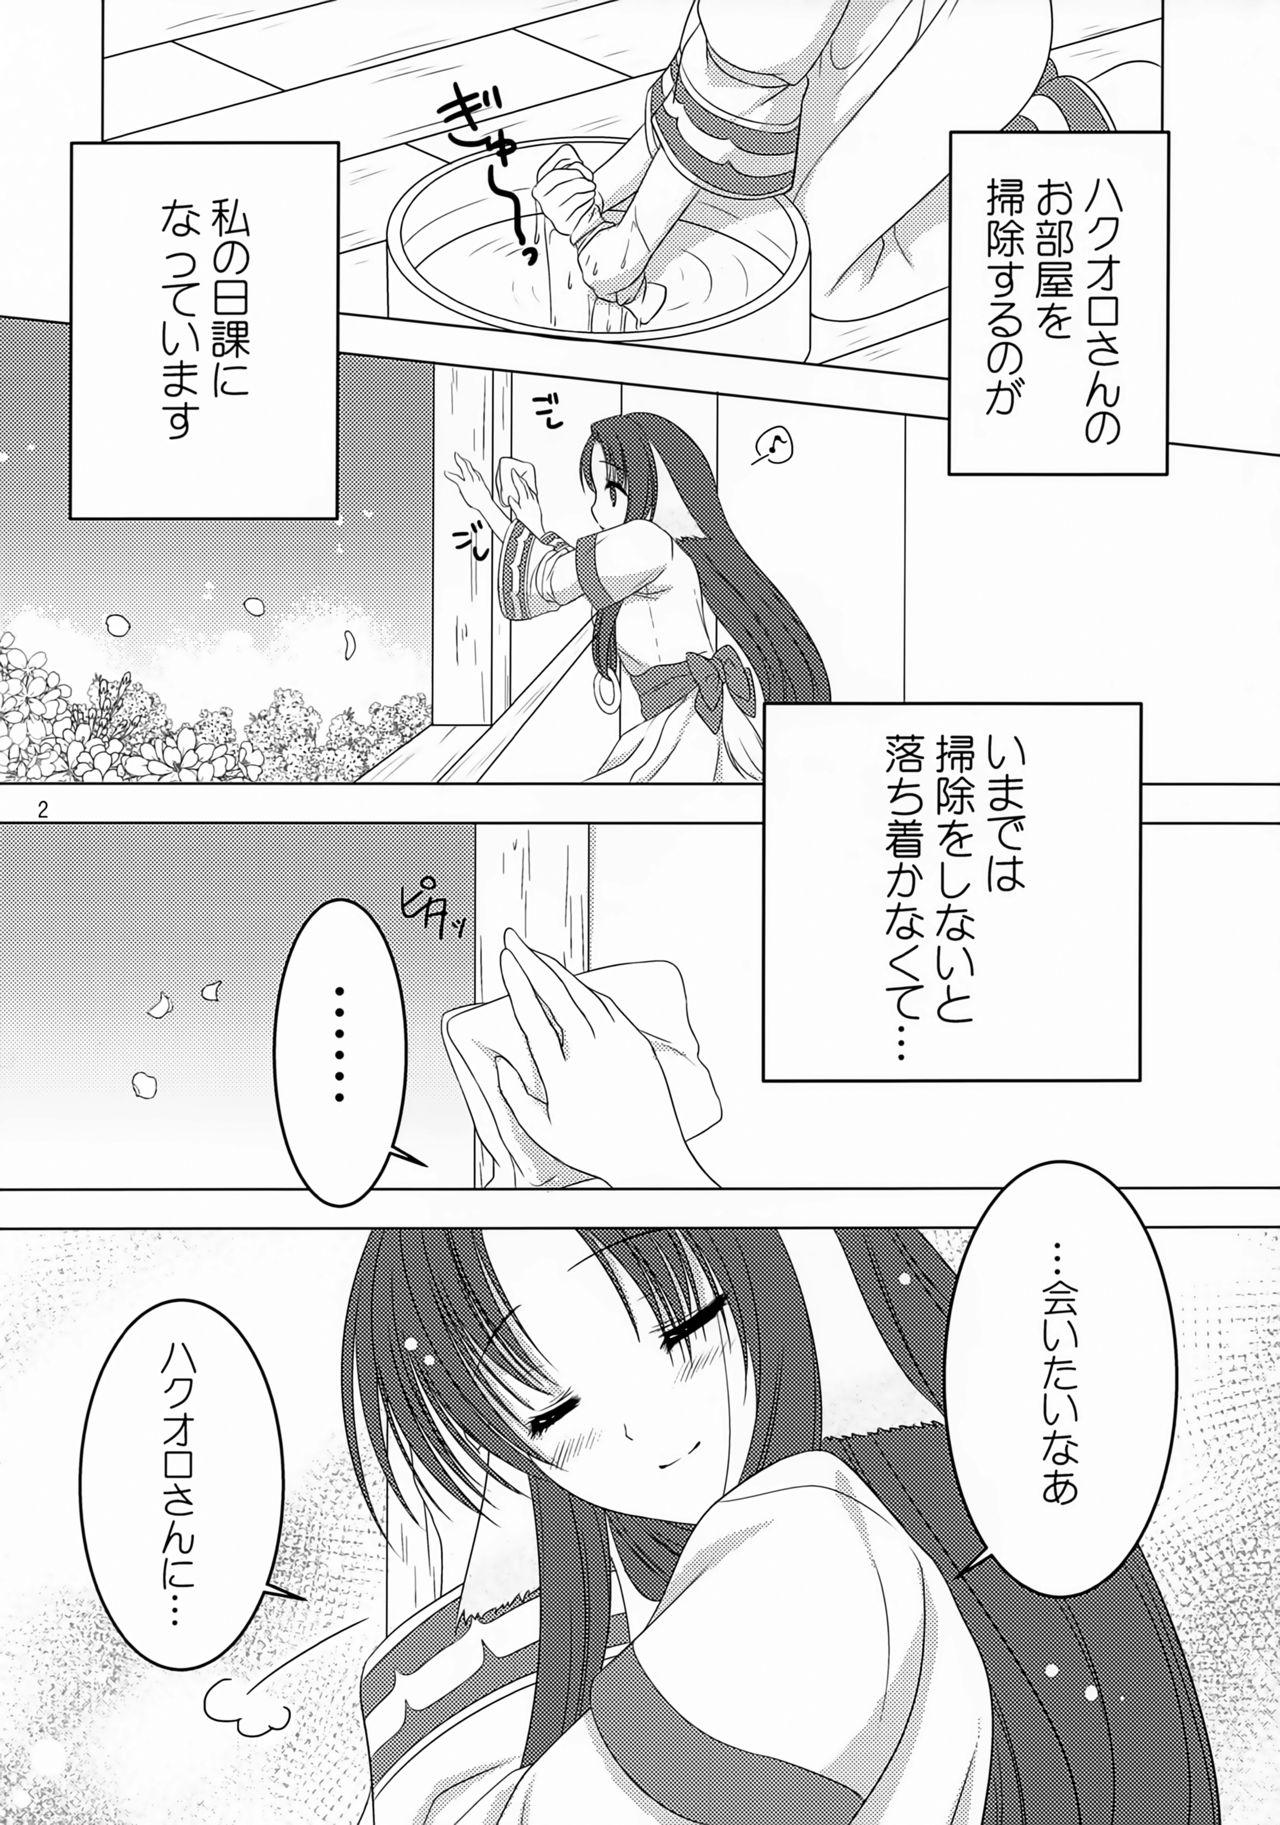 Jacking Off Sakura no Koku - Utawarerumono Teentube - Page 3